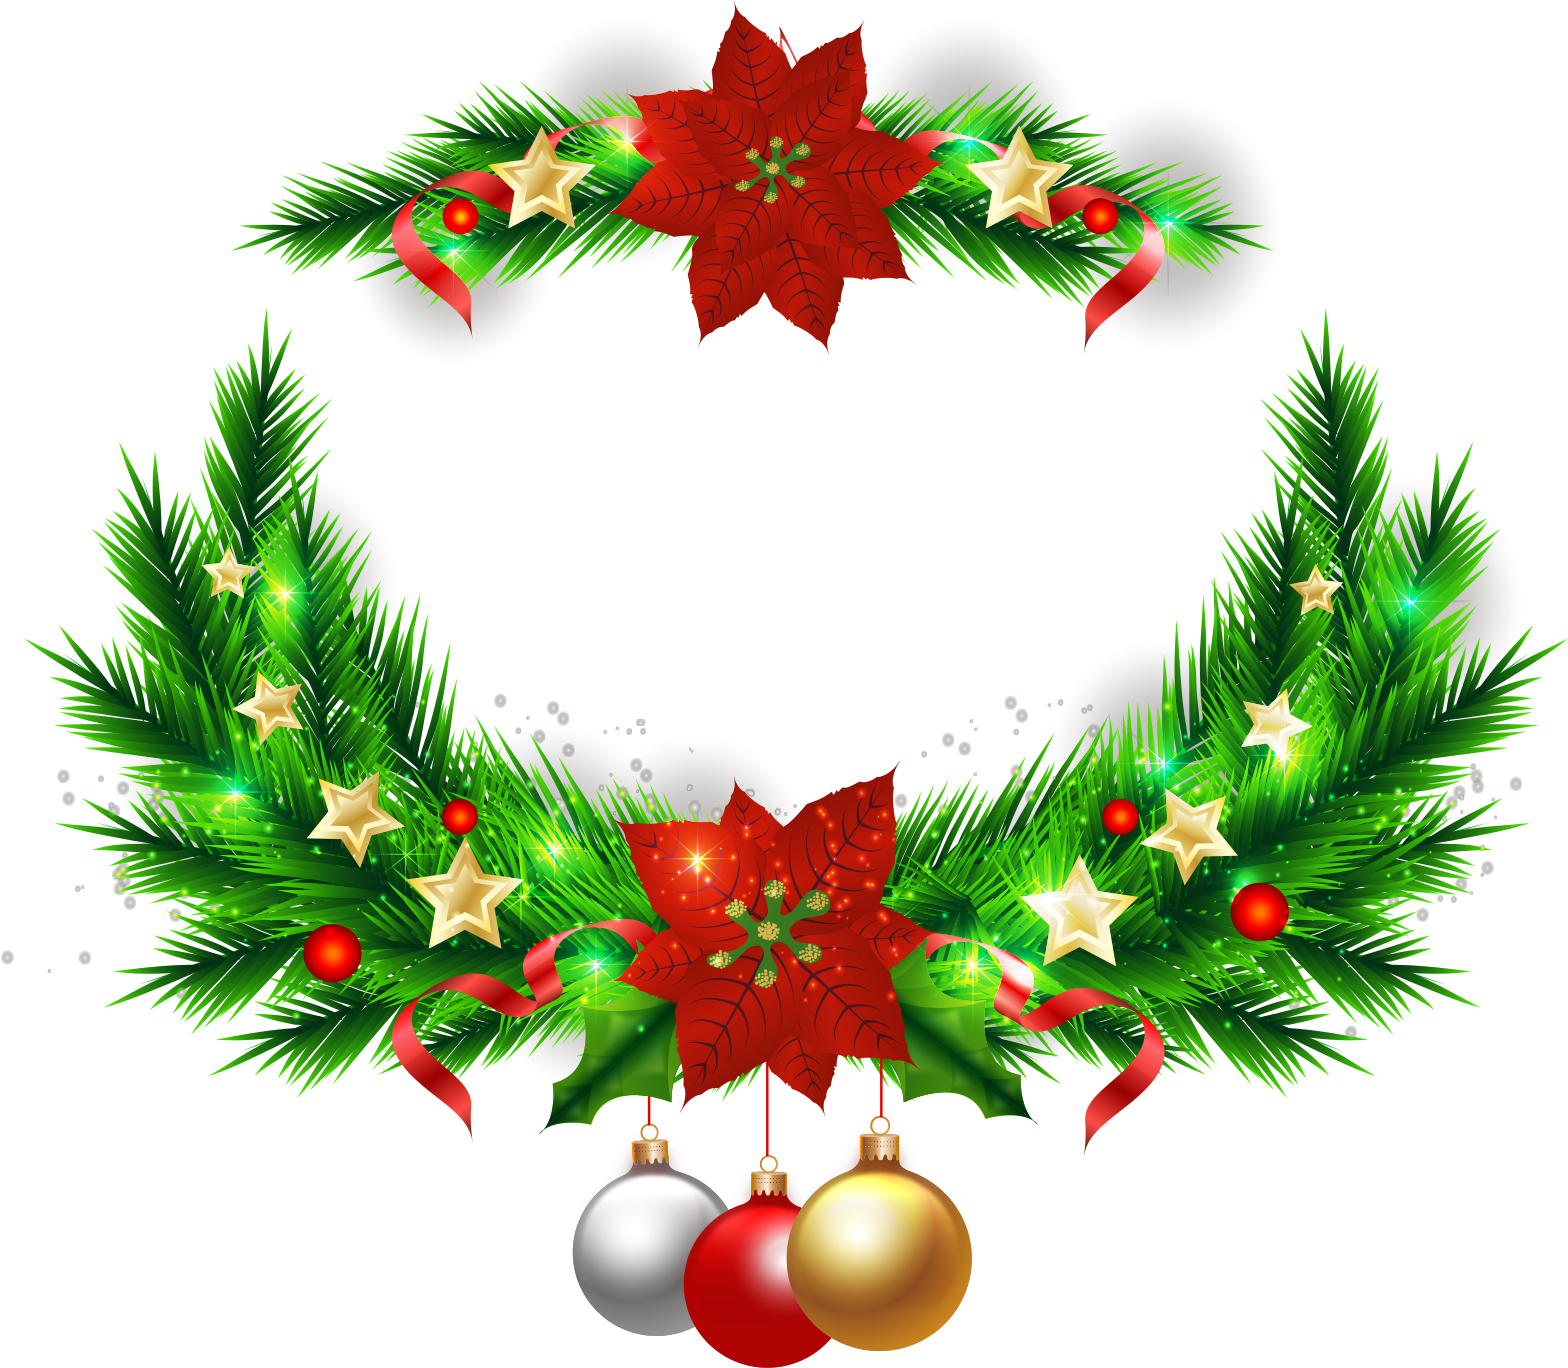 Christmas Tree Wreath Christmas Ornament - Wreath (2000x2000)